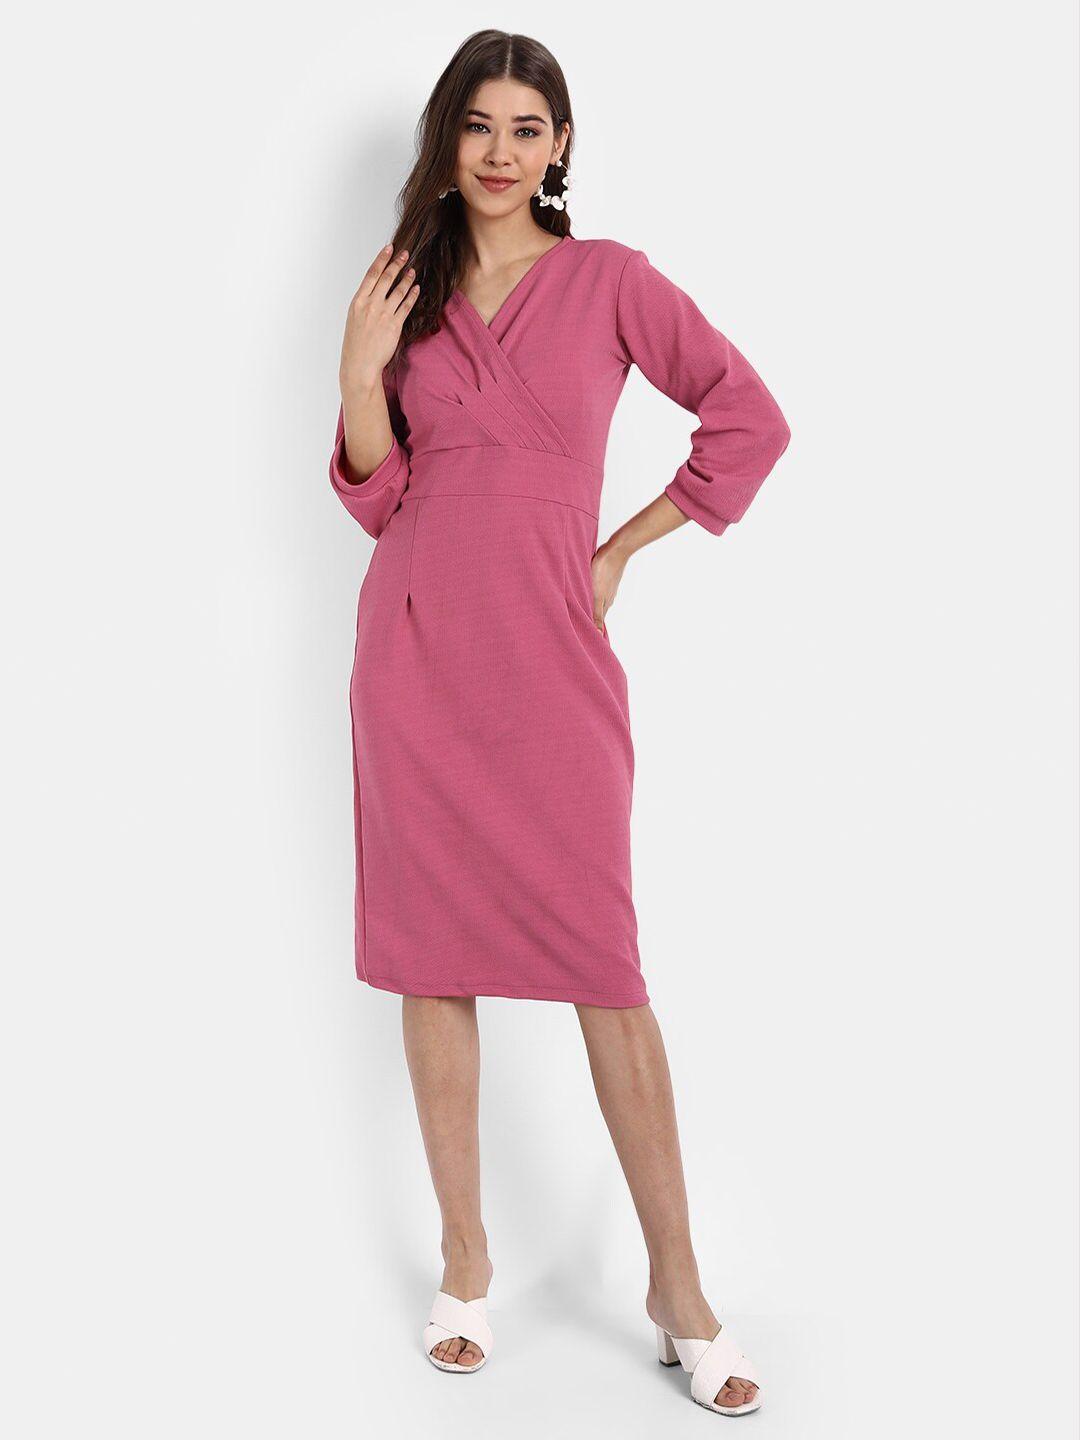 broadstar women pink solid sheath dress